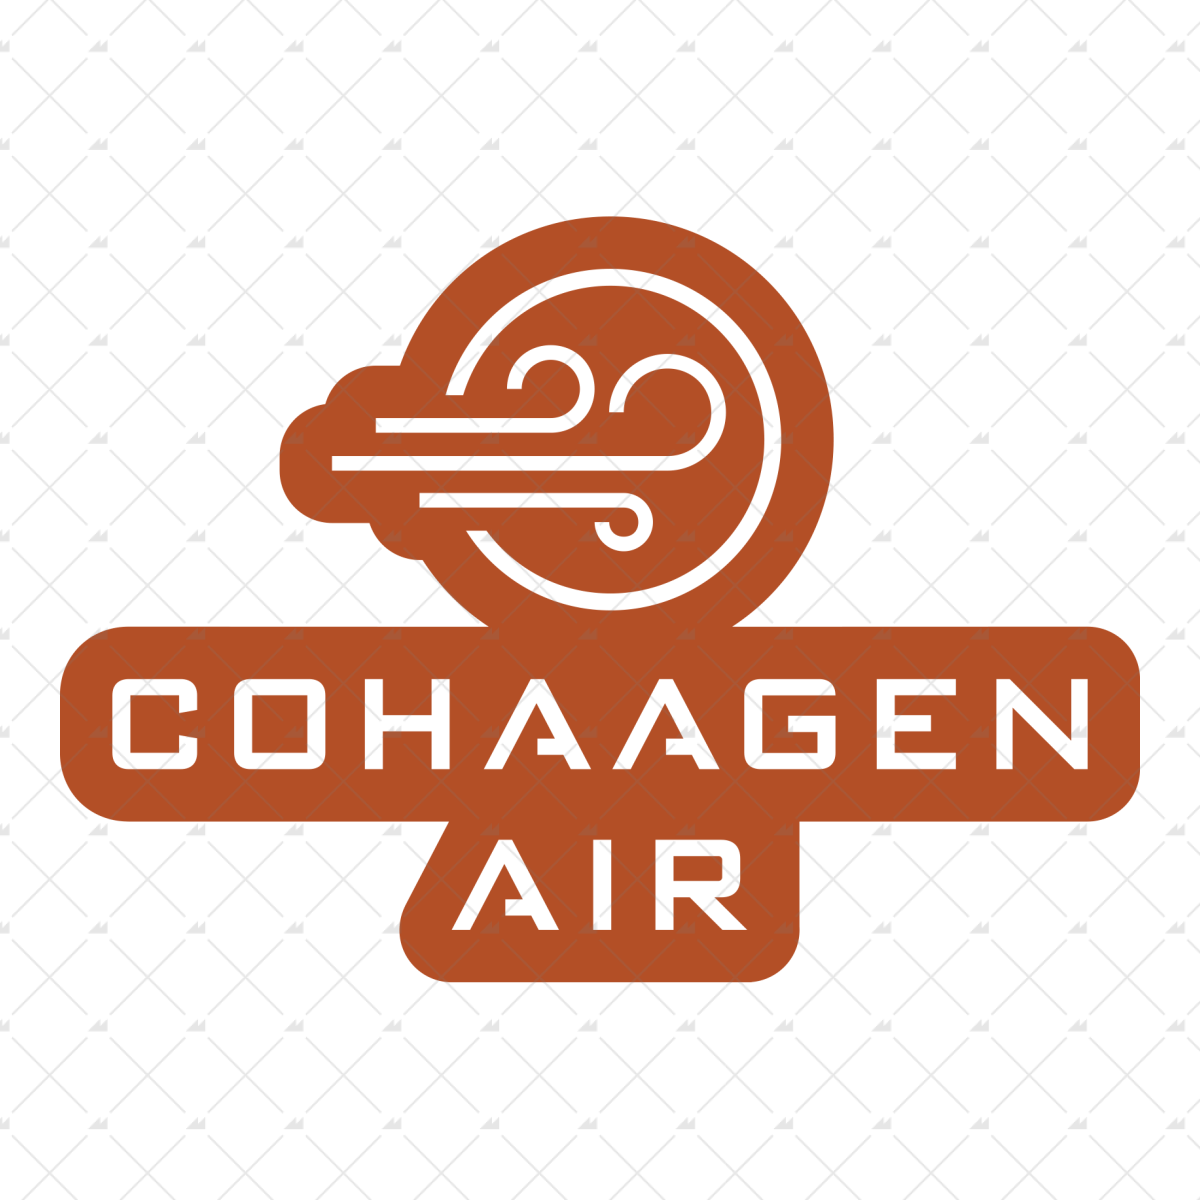 Cohaagen Air - Sticker